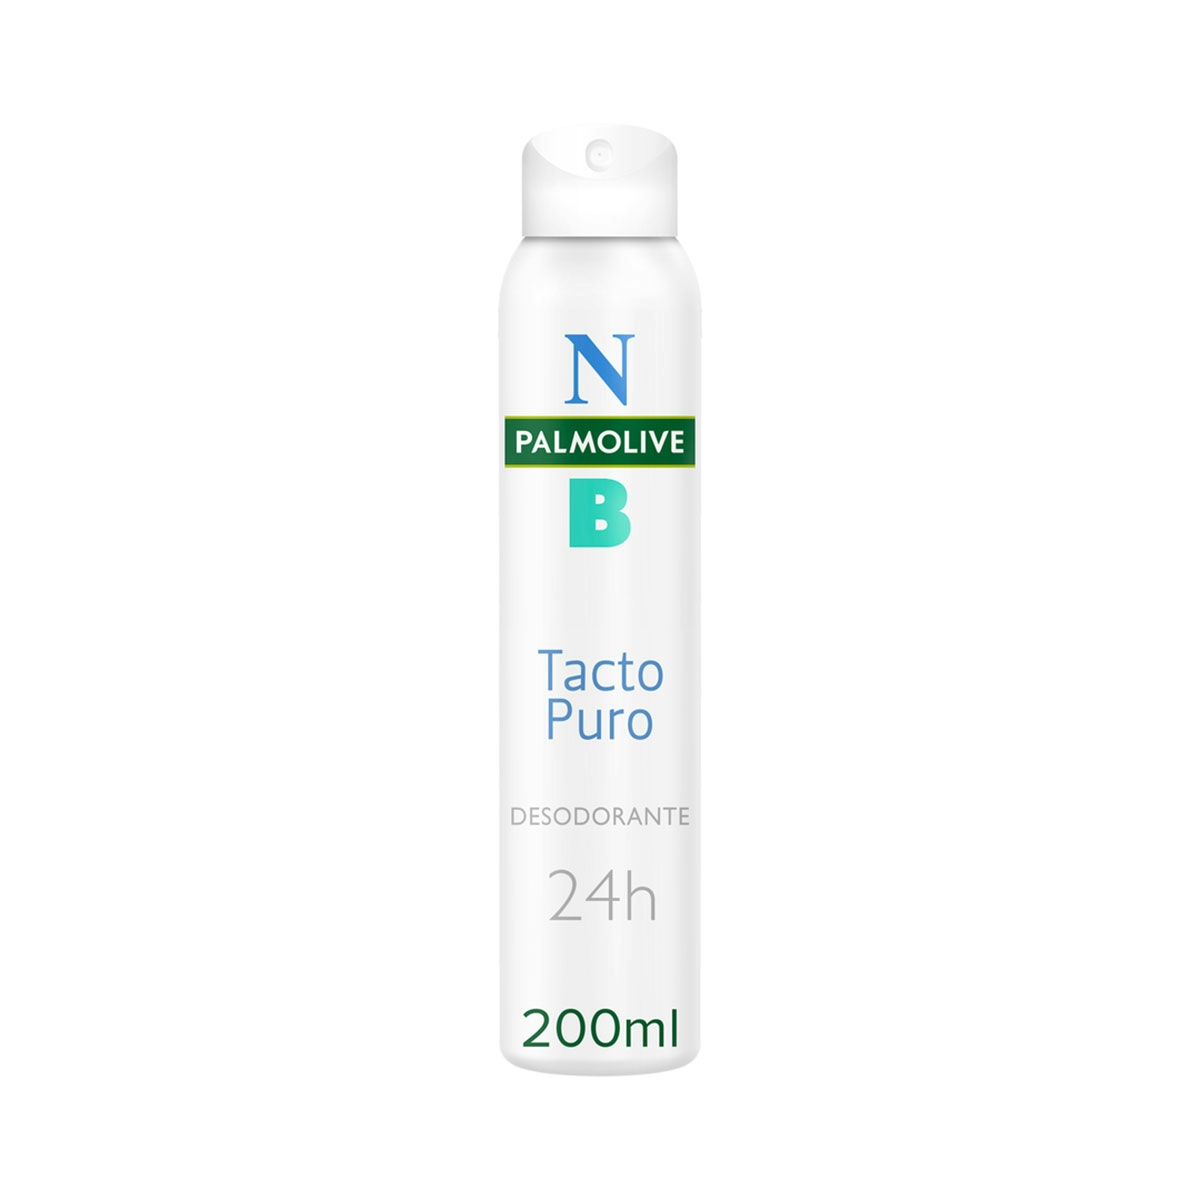 Desodorante spray Palmolive NB Tacto Puro 24h antimanchas blancas 200ml